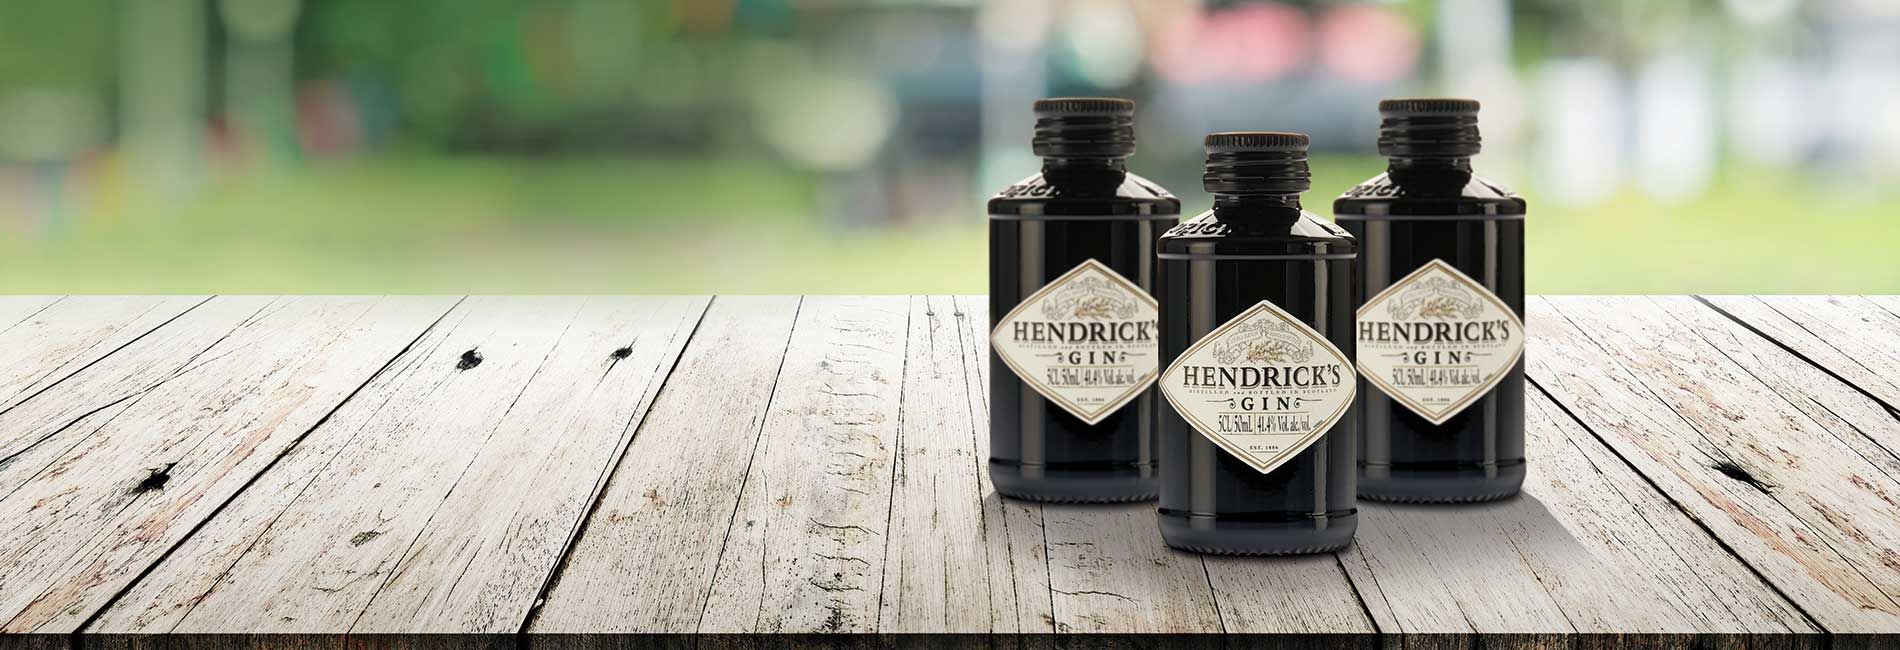 Hendricks Gin bottles